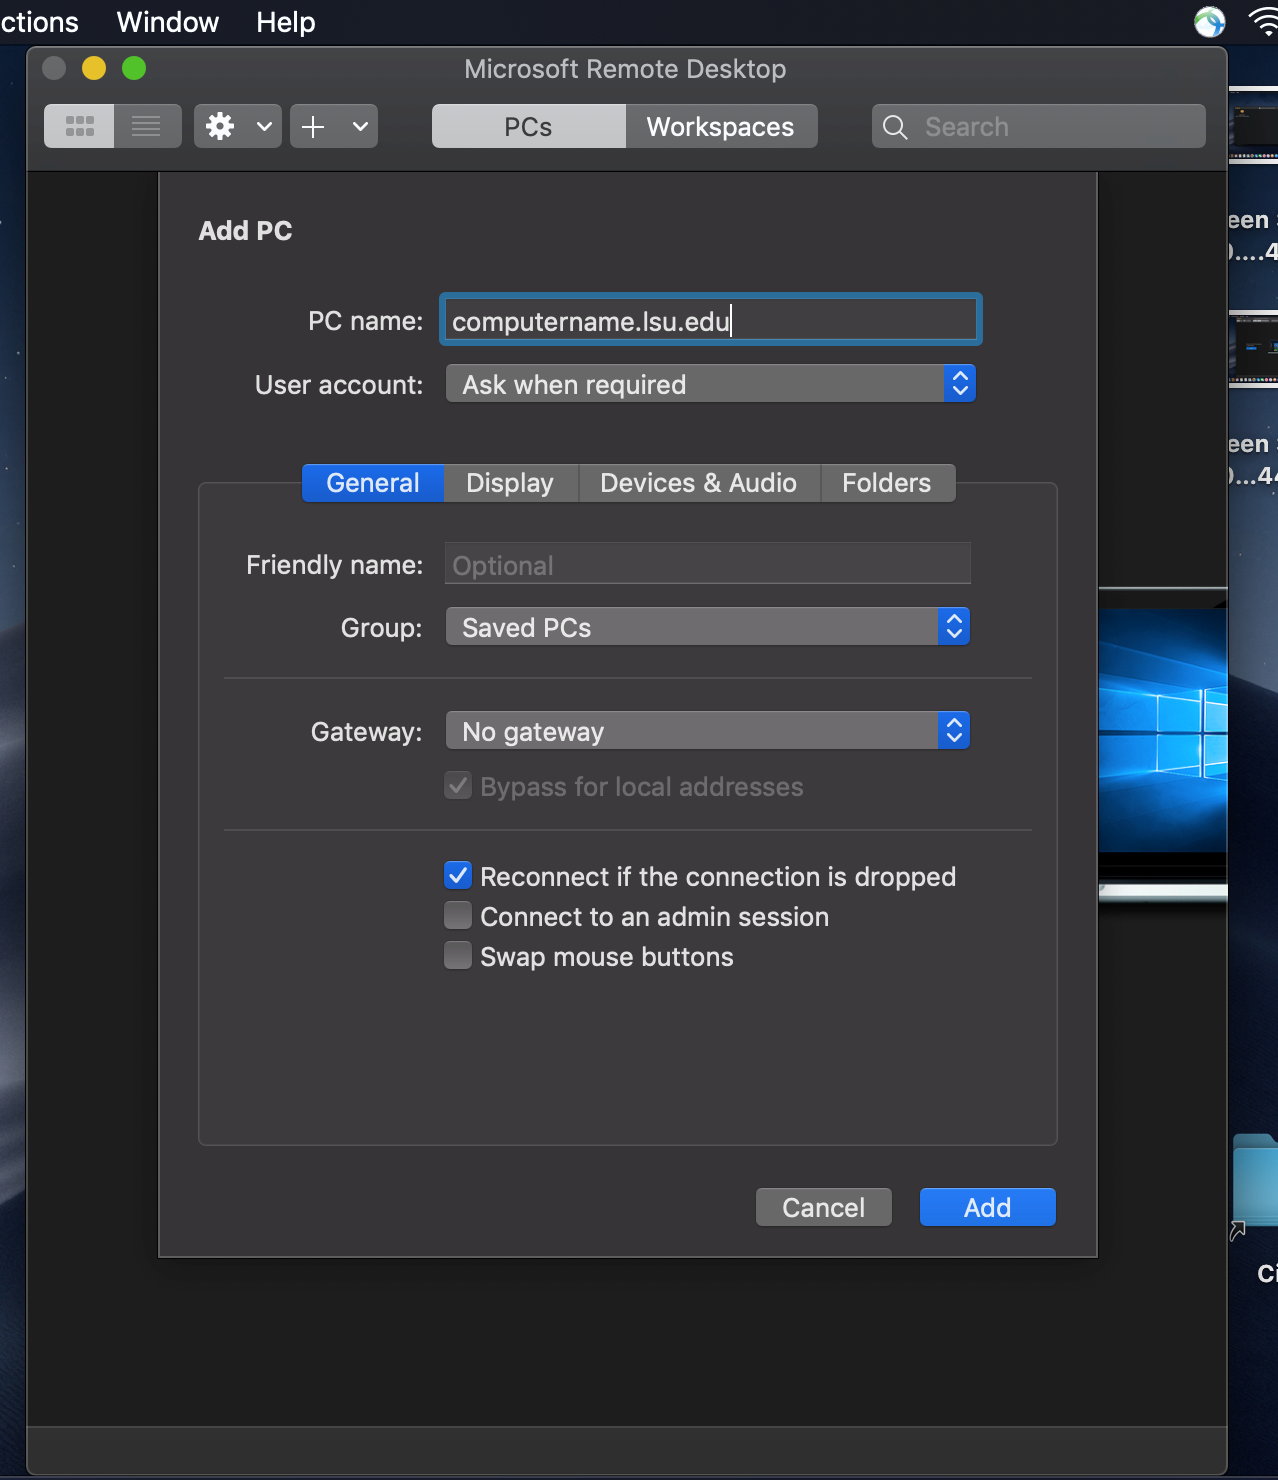 microsoft remote desktop for mac gateway